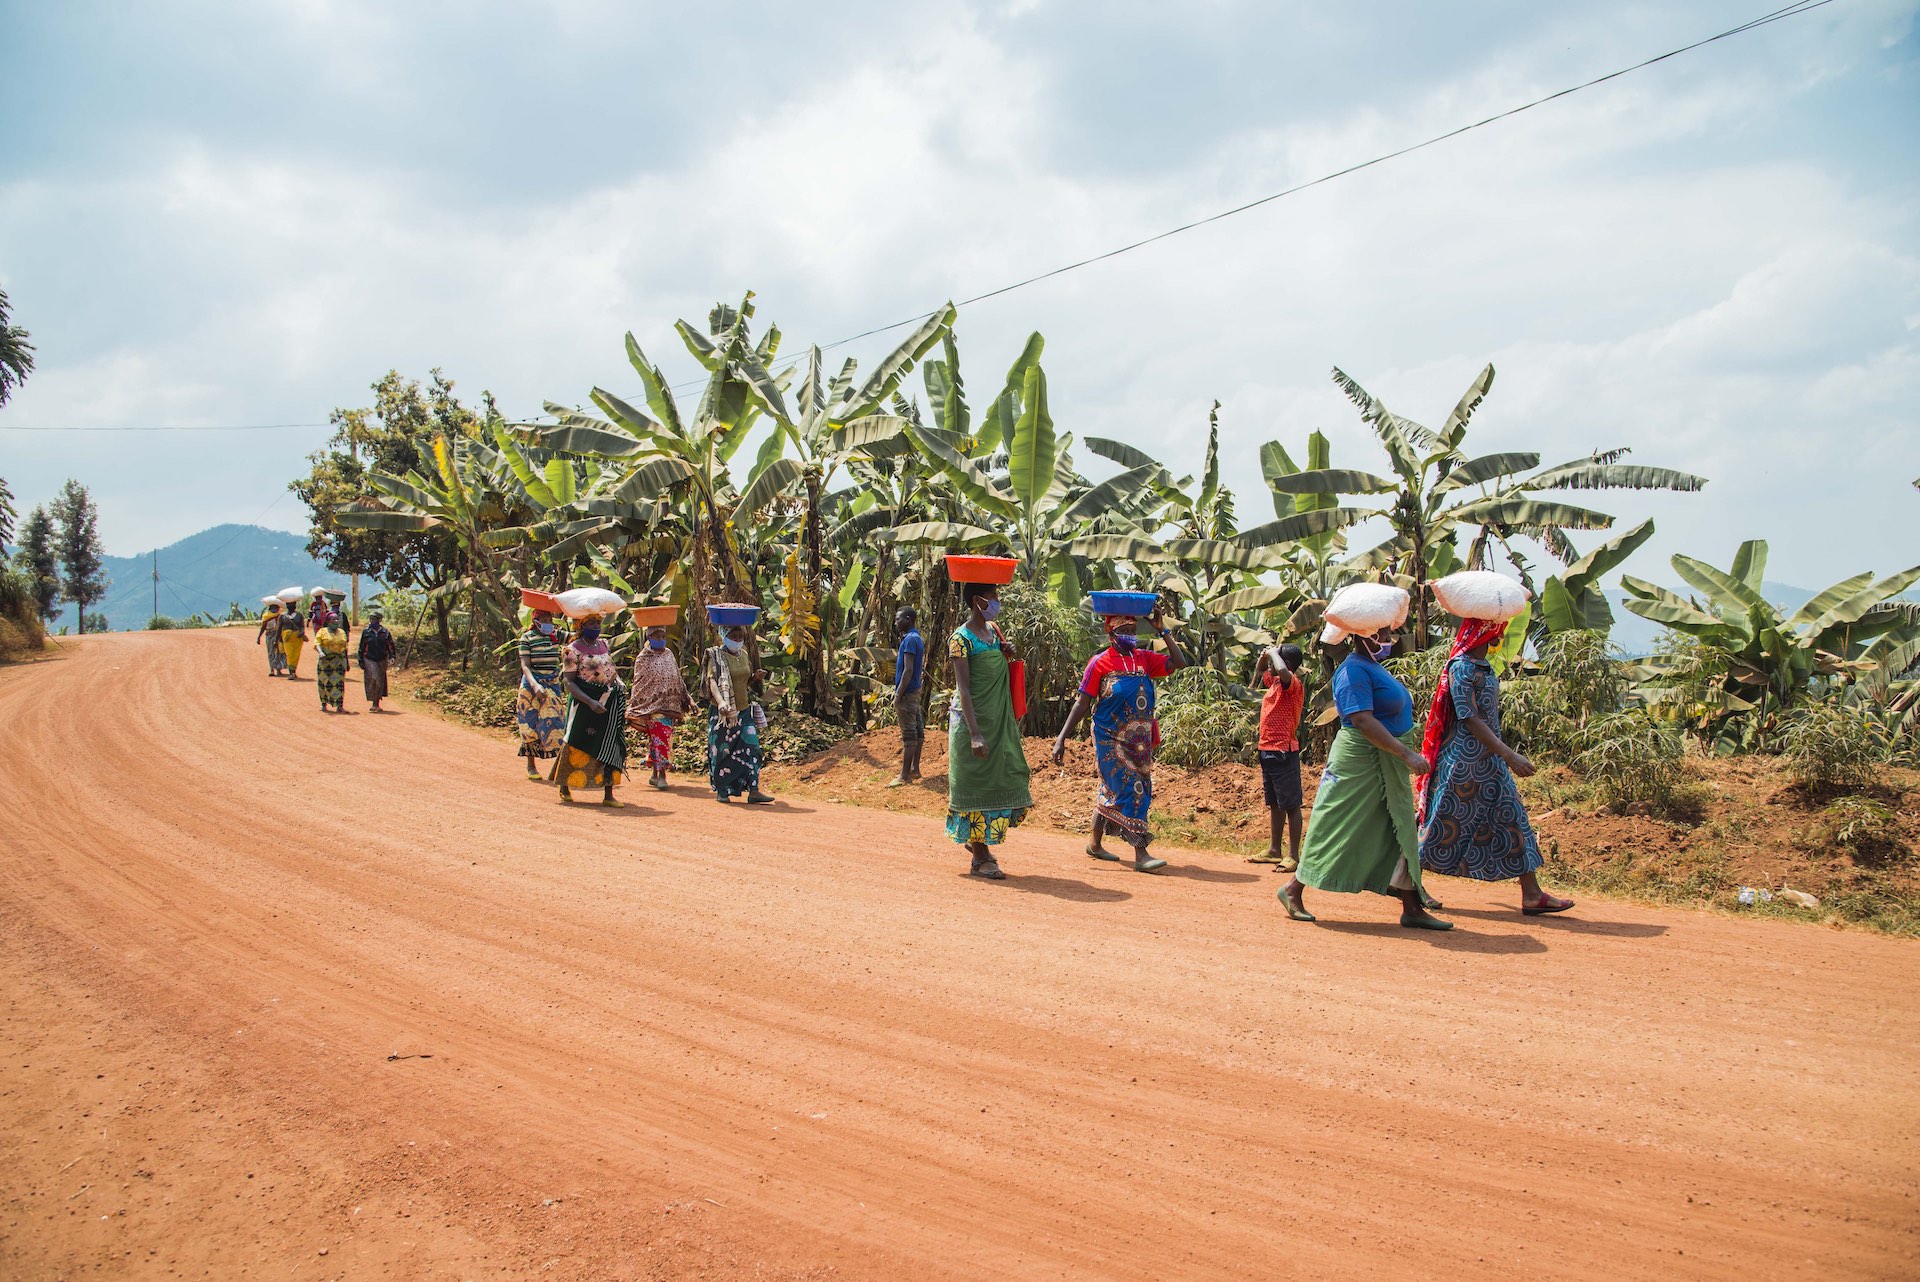 Kaffeebäuerinnen in Ruanda transportieren Kaffee in die Washing Station